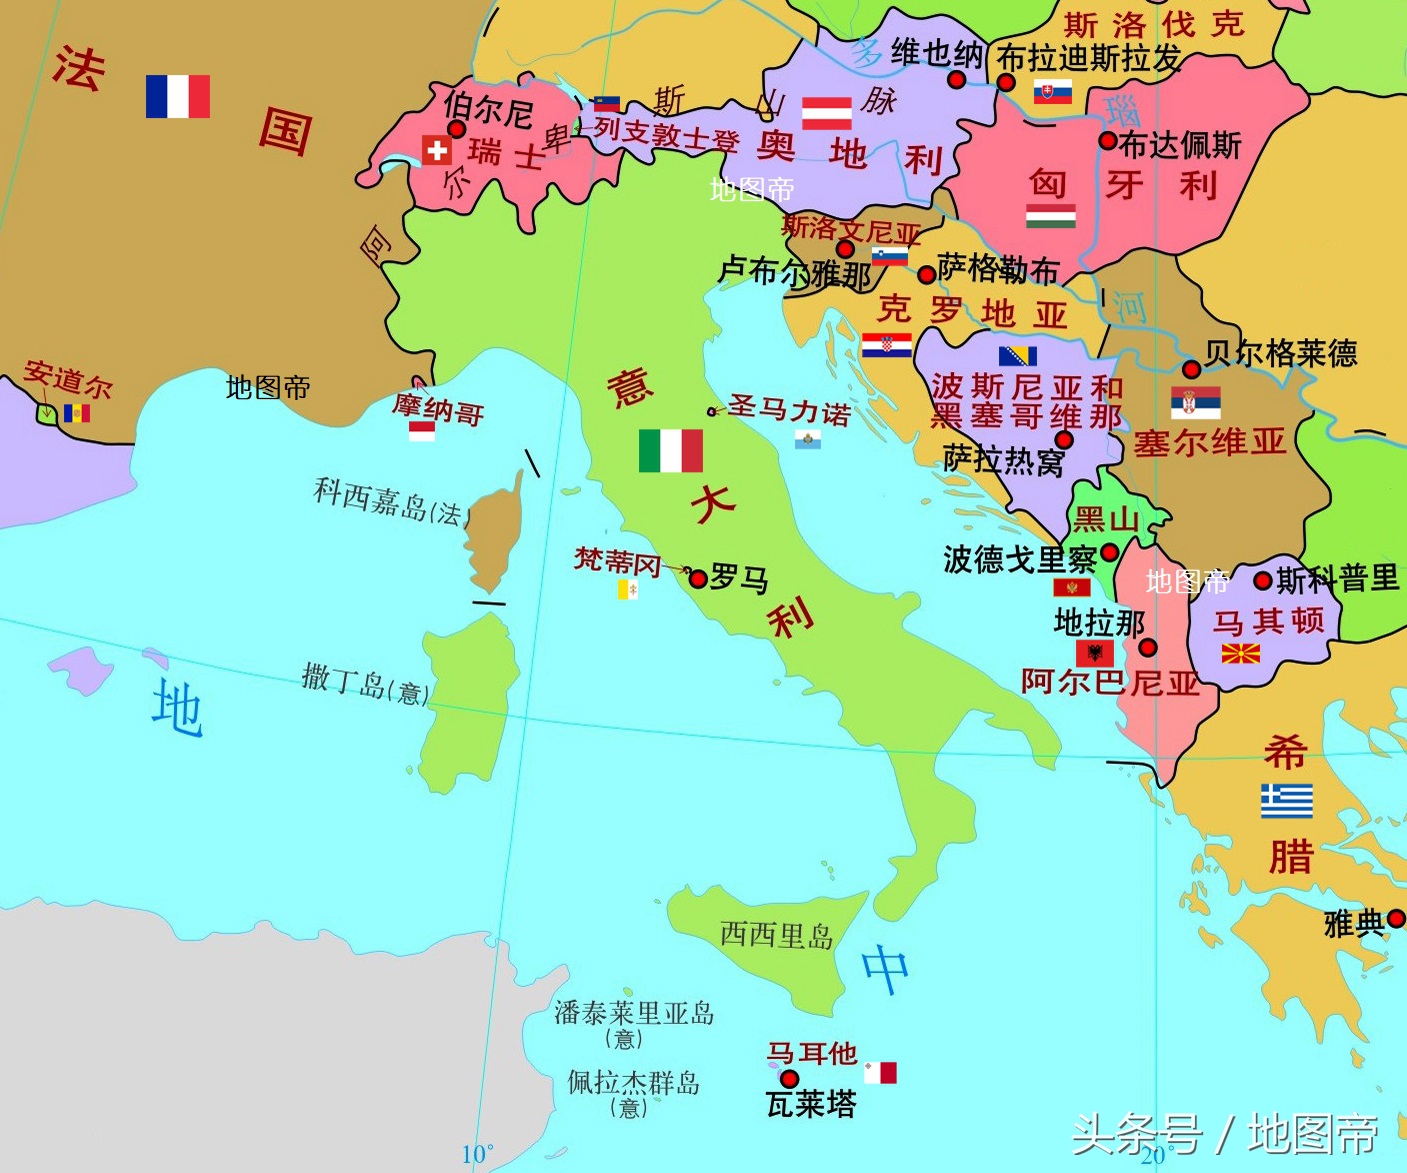 意大利在线地图_法国22个大区地图_微信公众号文章